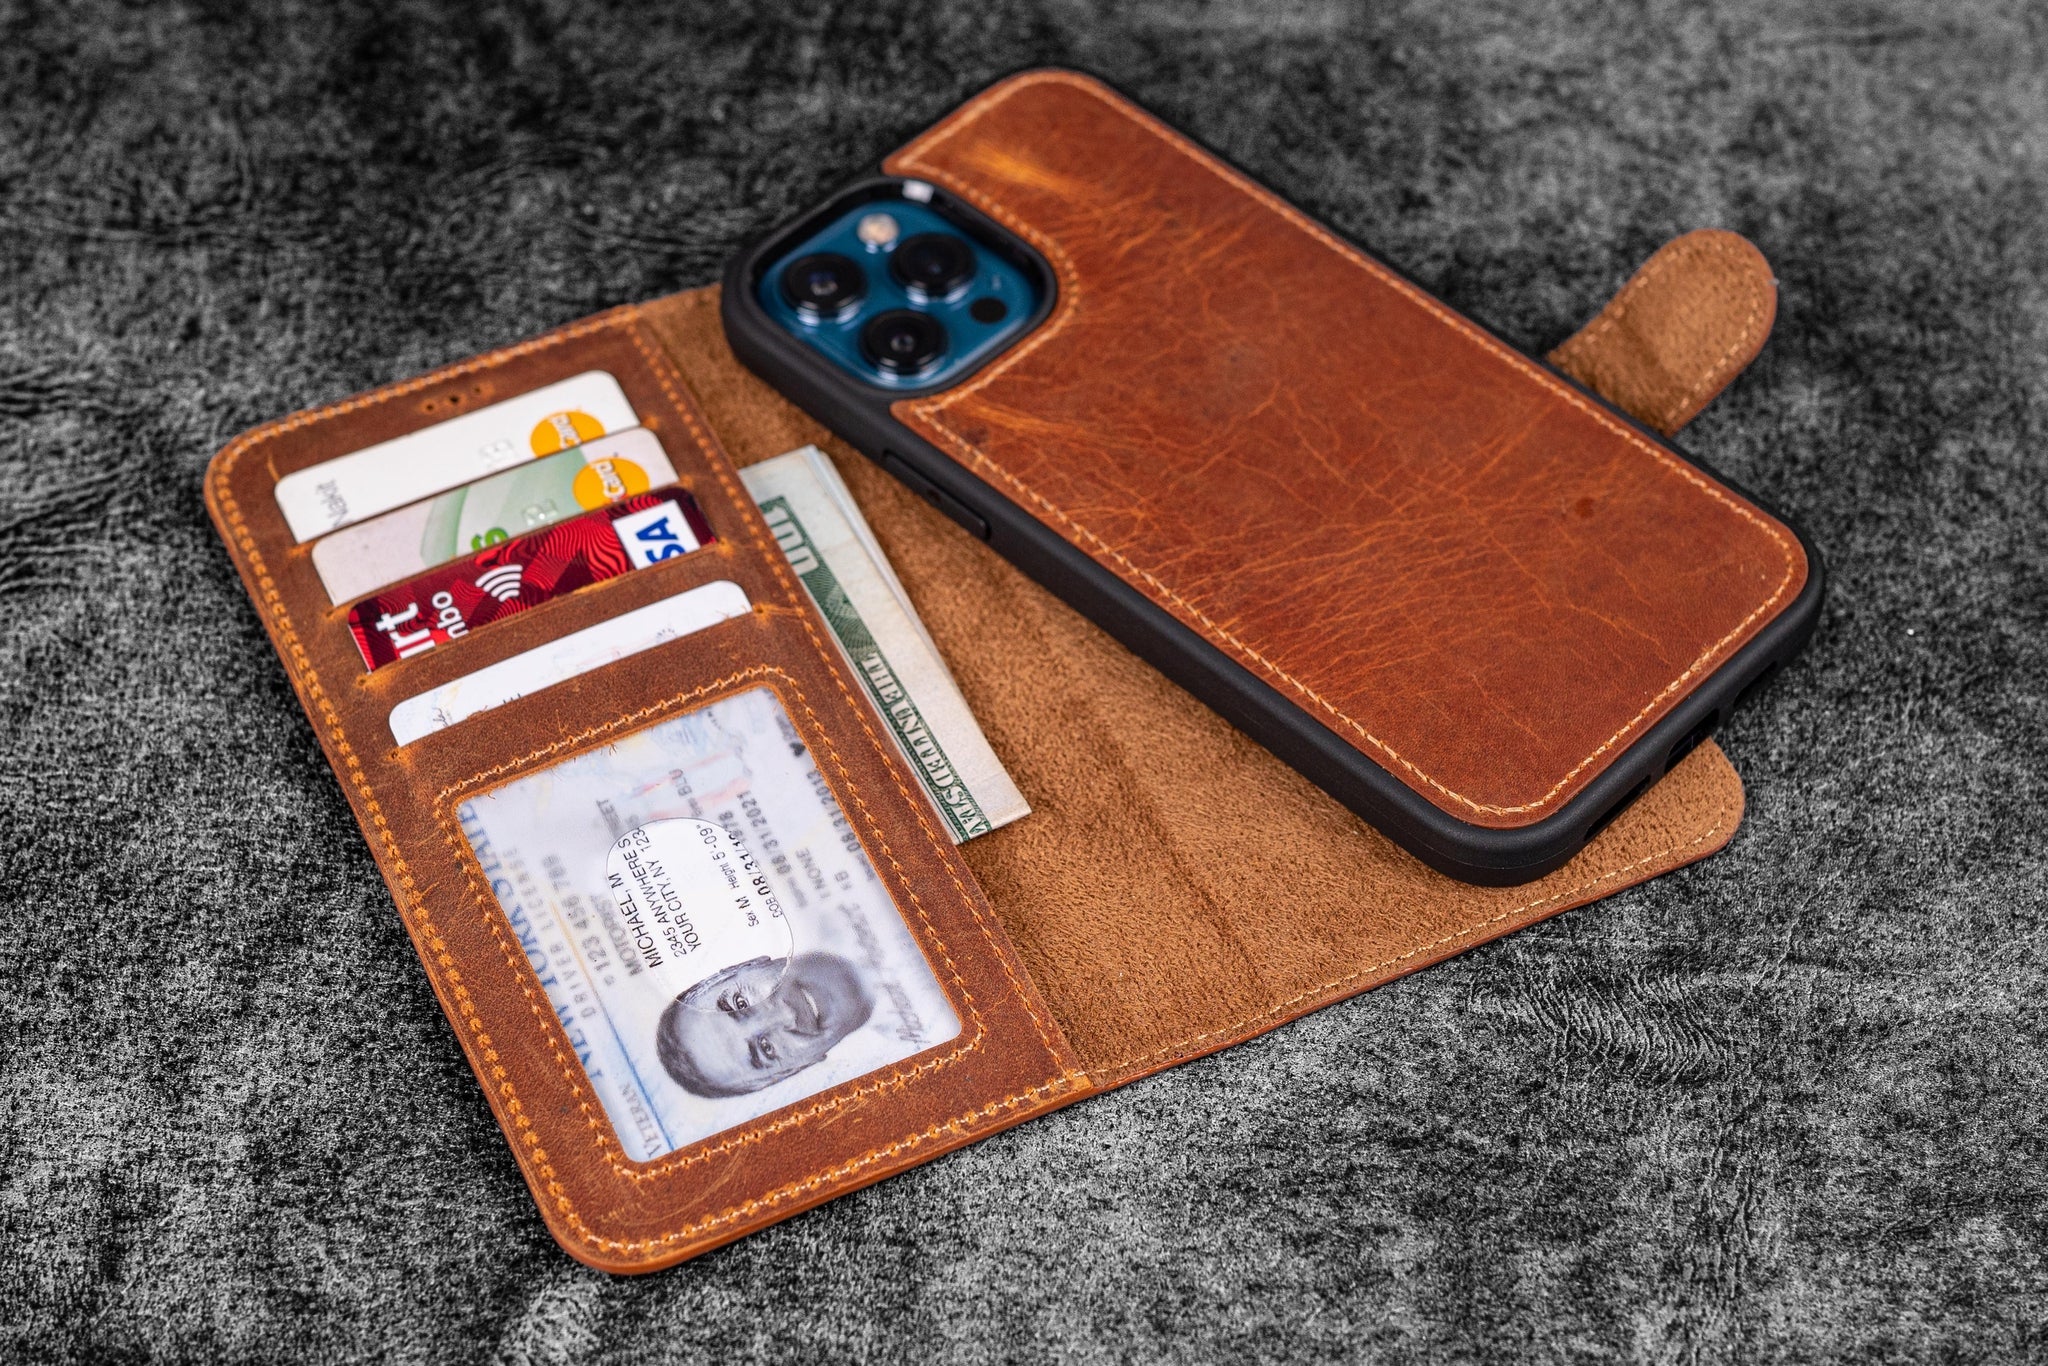 (セット販売) iPhone 12 mini  / Leather Wallet